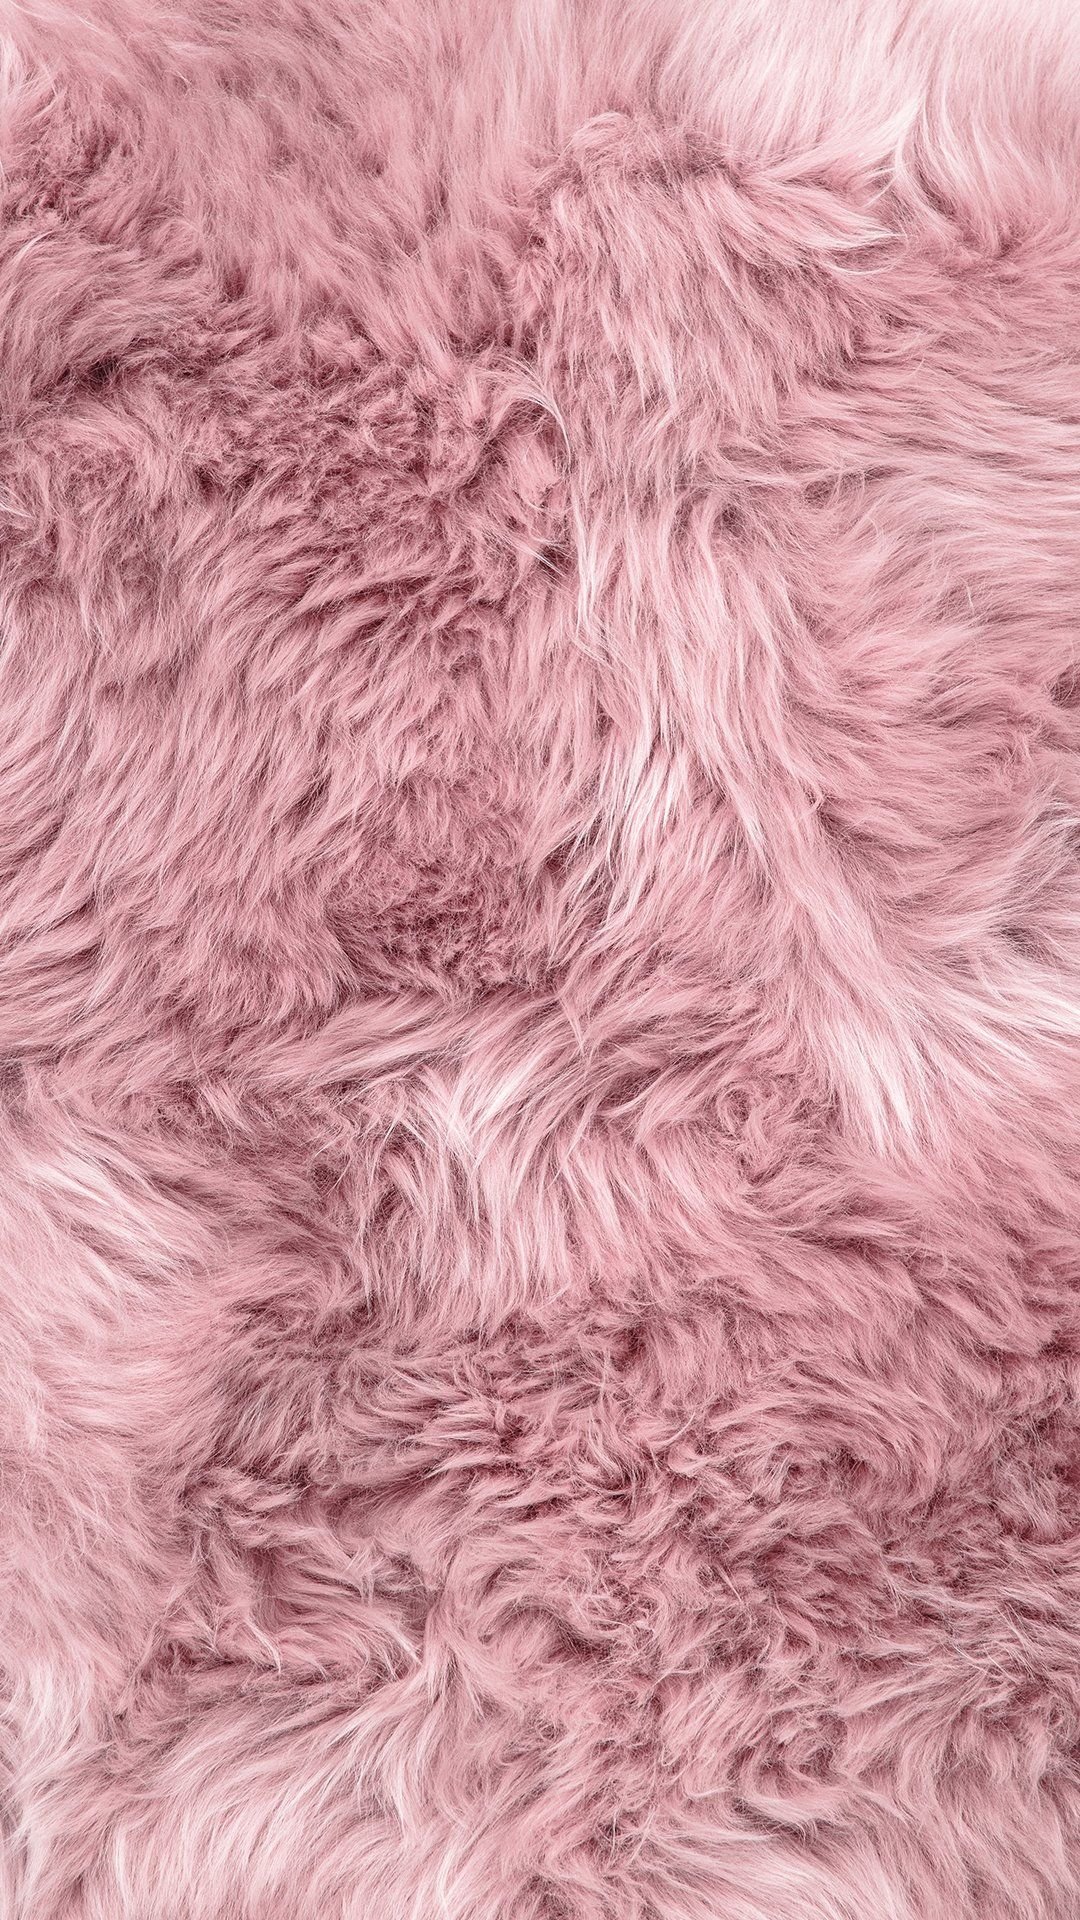 Pink Fur Wallpaper Free Pink Fur Background